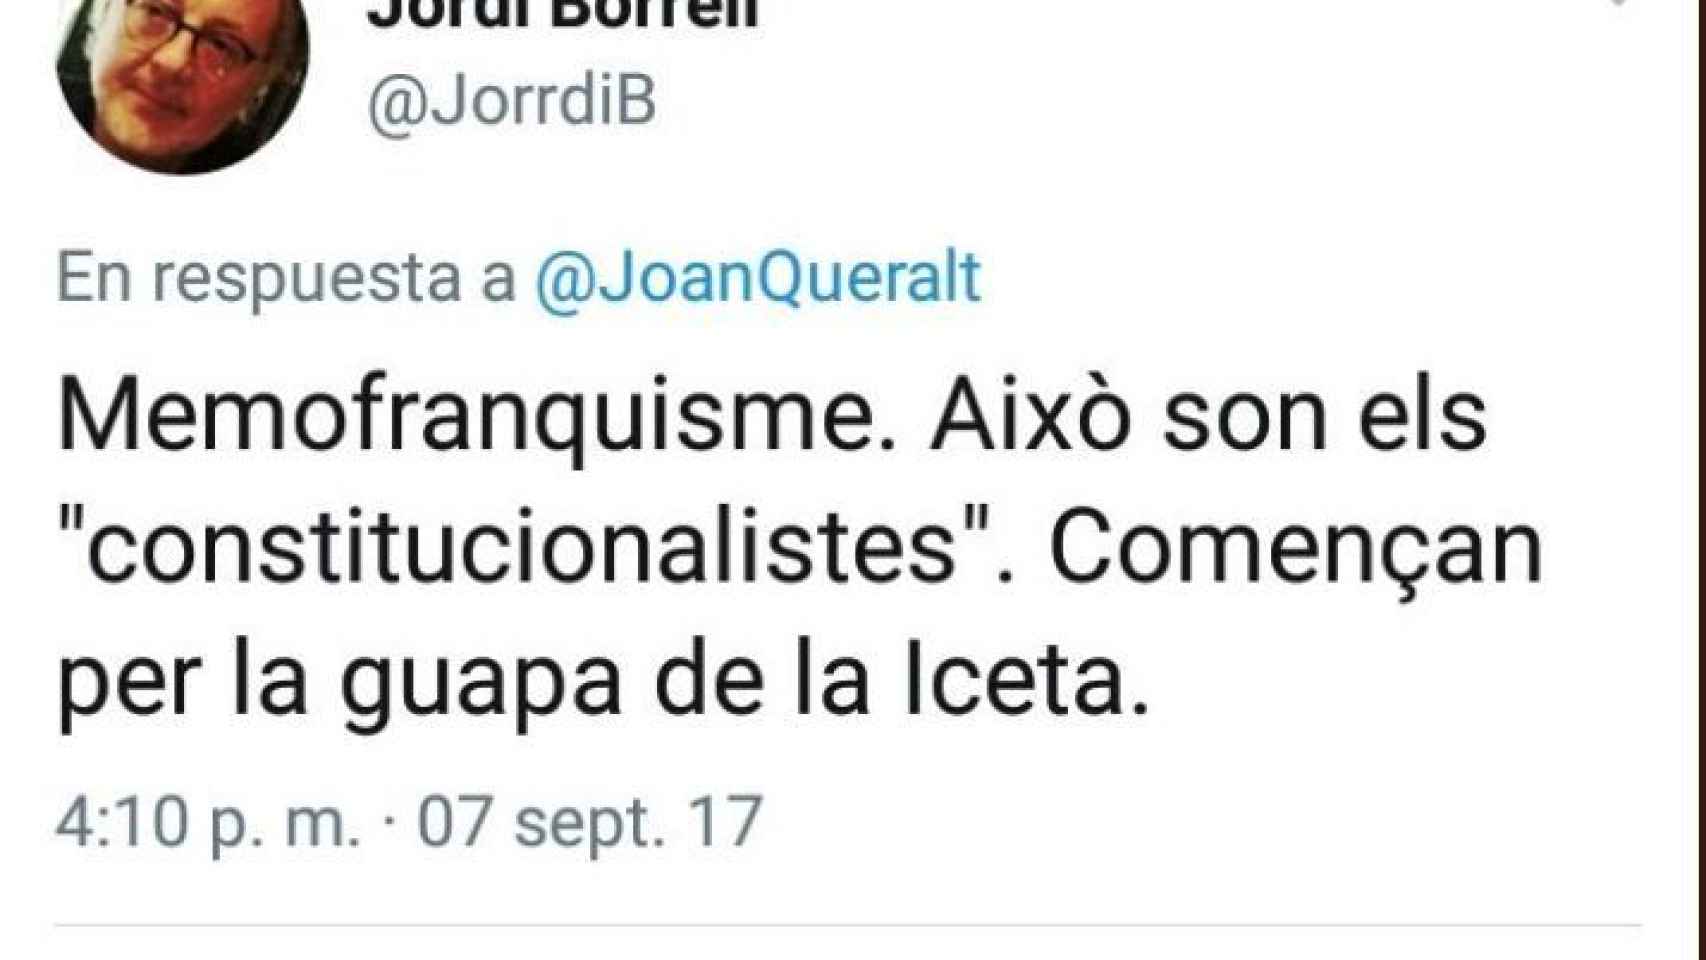 Aquí, Hernández Borrell se refiere al candidato socialista como la guapa de Iceta